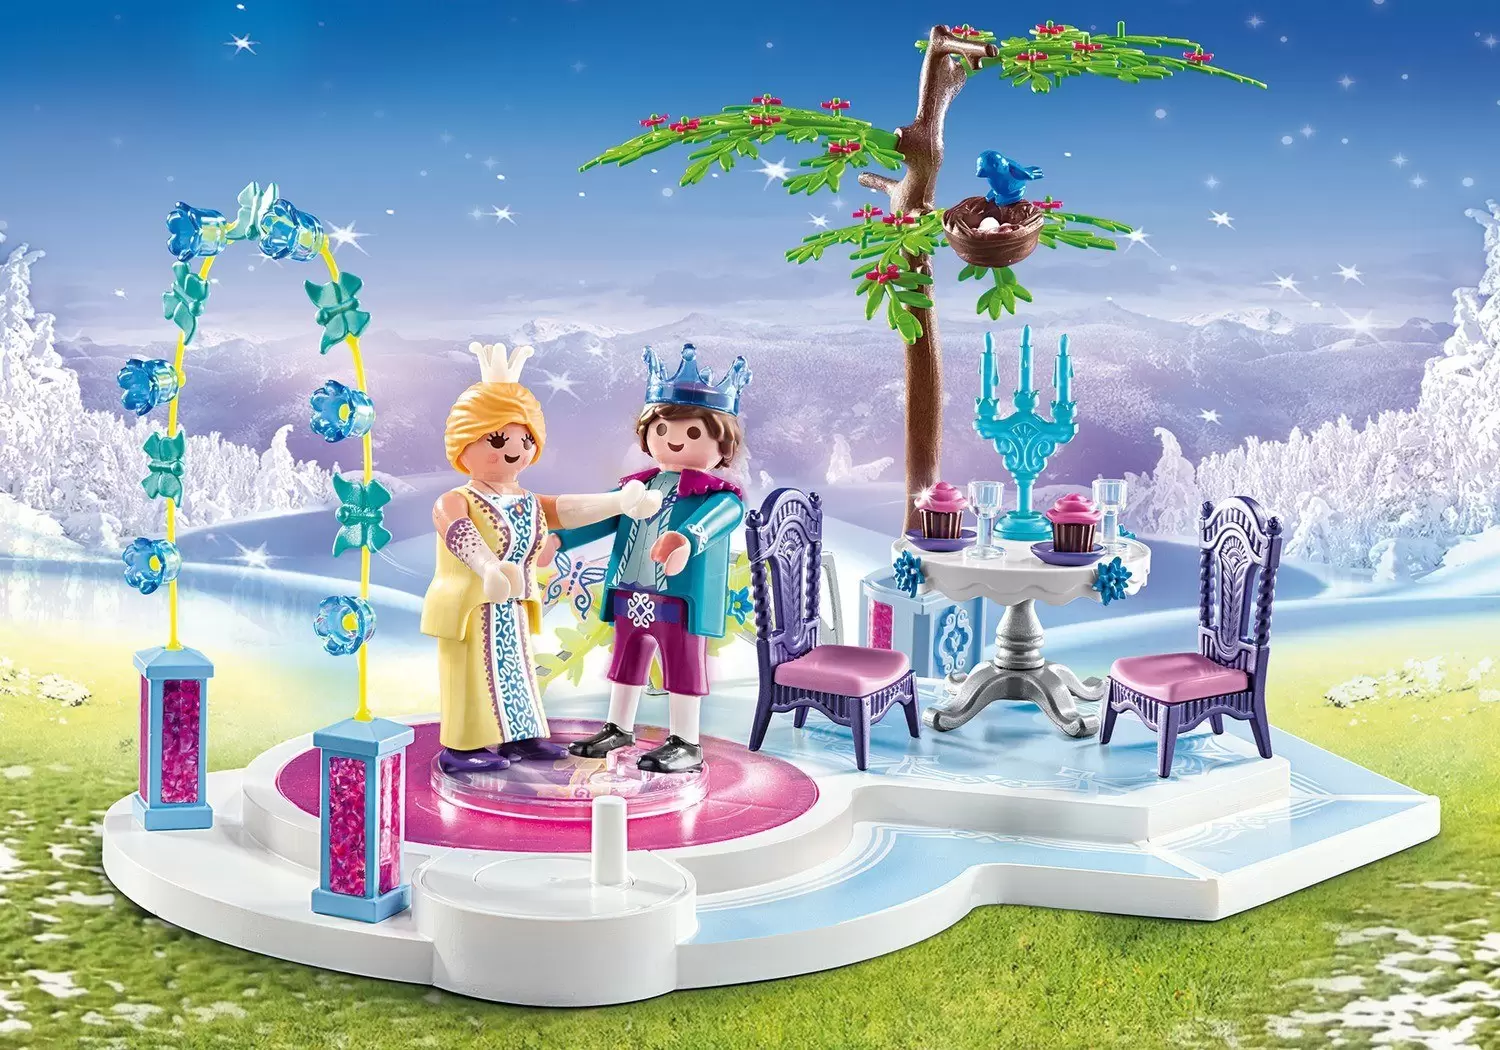 Playmobil Princess - Princess Ball Super Set